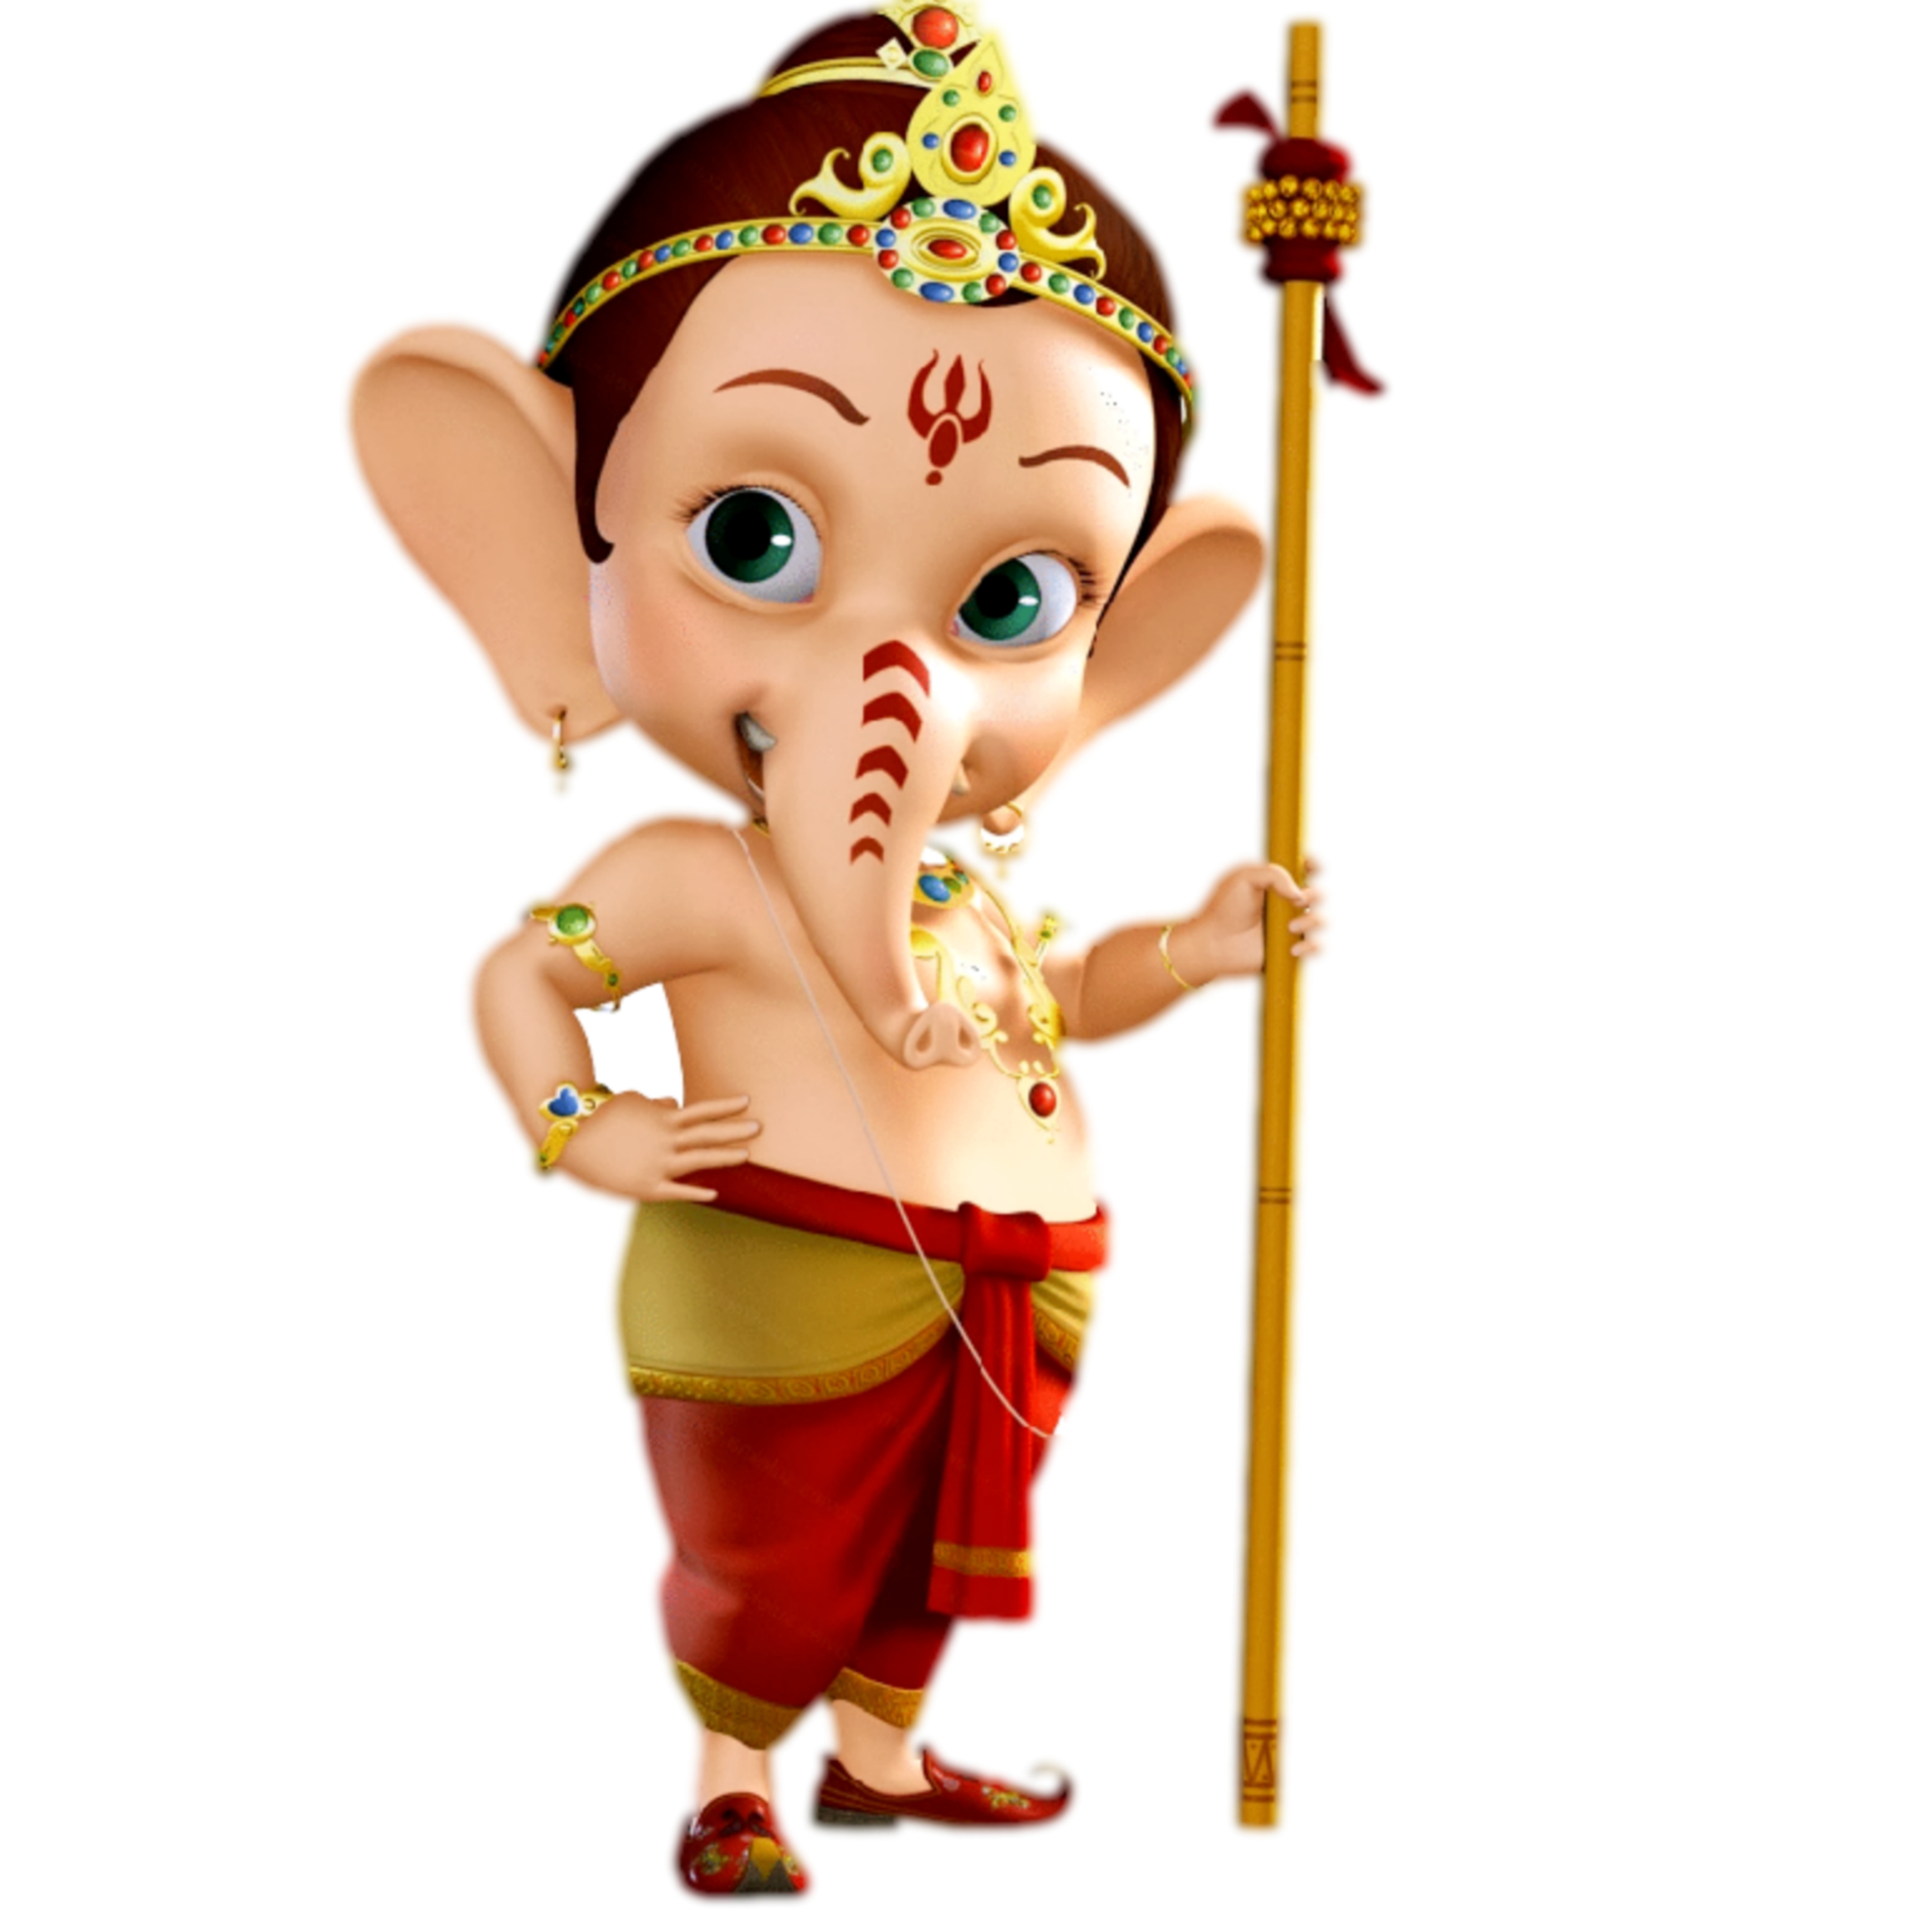 गणेश जी की मूर्ति की फोटो मूर्ति बनाने के लिए  Ganesh ji ki murti ki photo murti banane ke liye